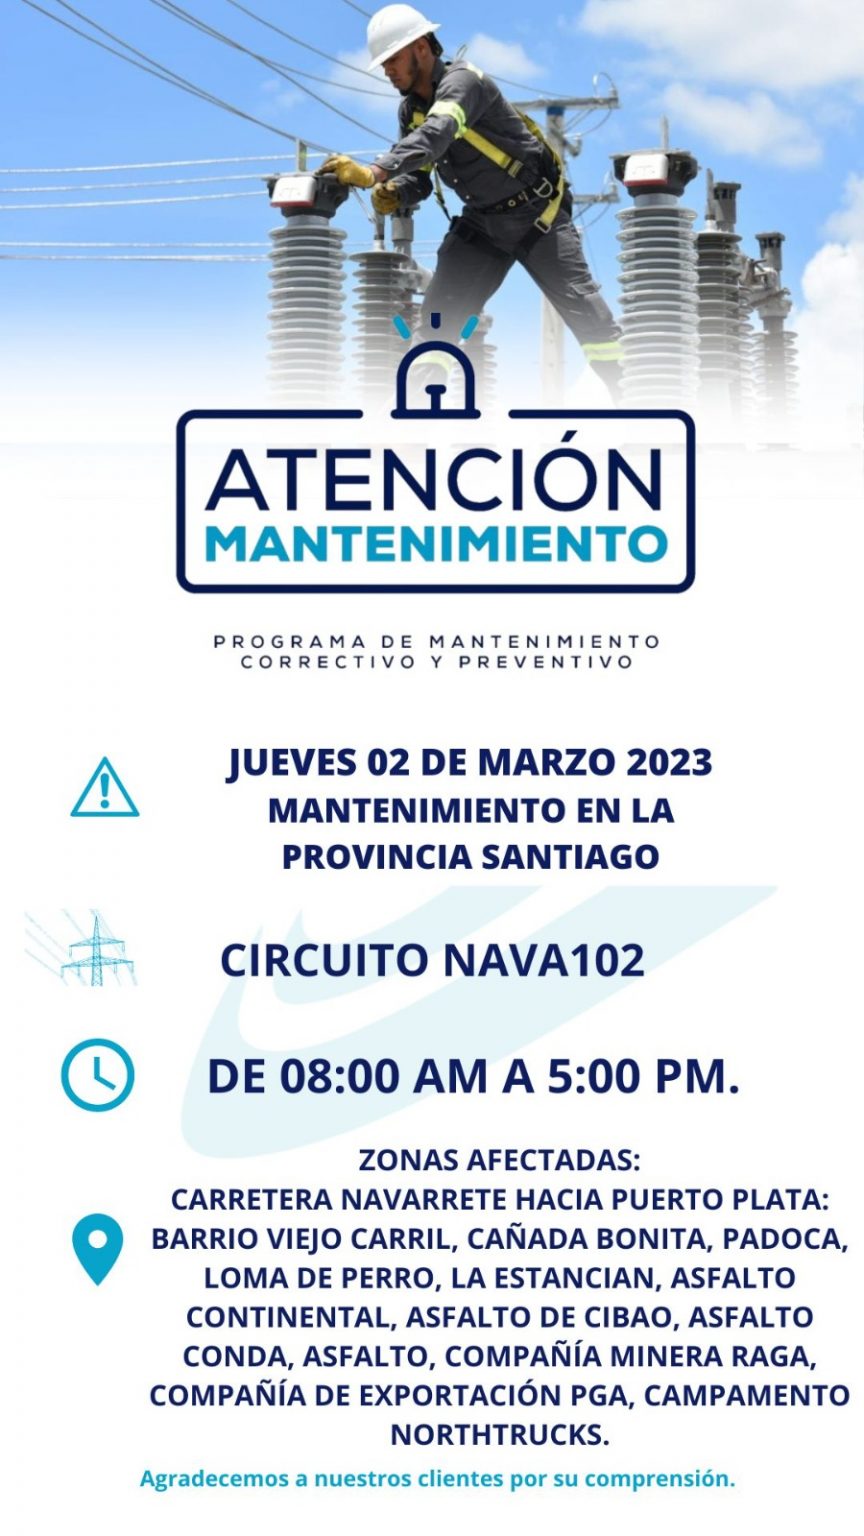 Edenorte anuncia interrupcion por mantenimientos en Puerto Plata